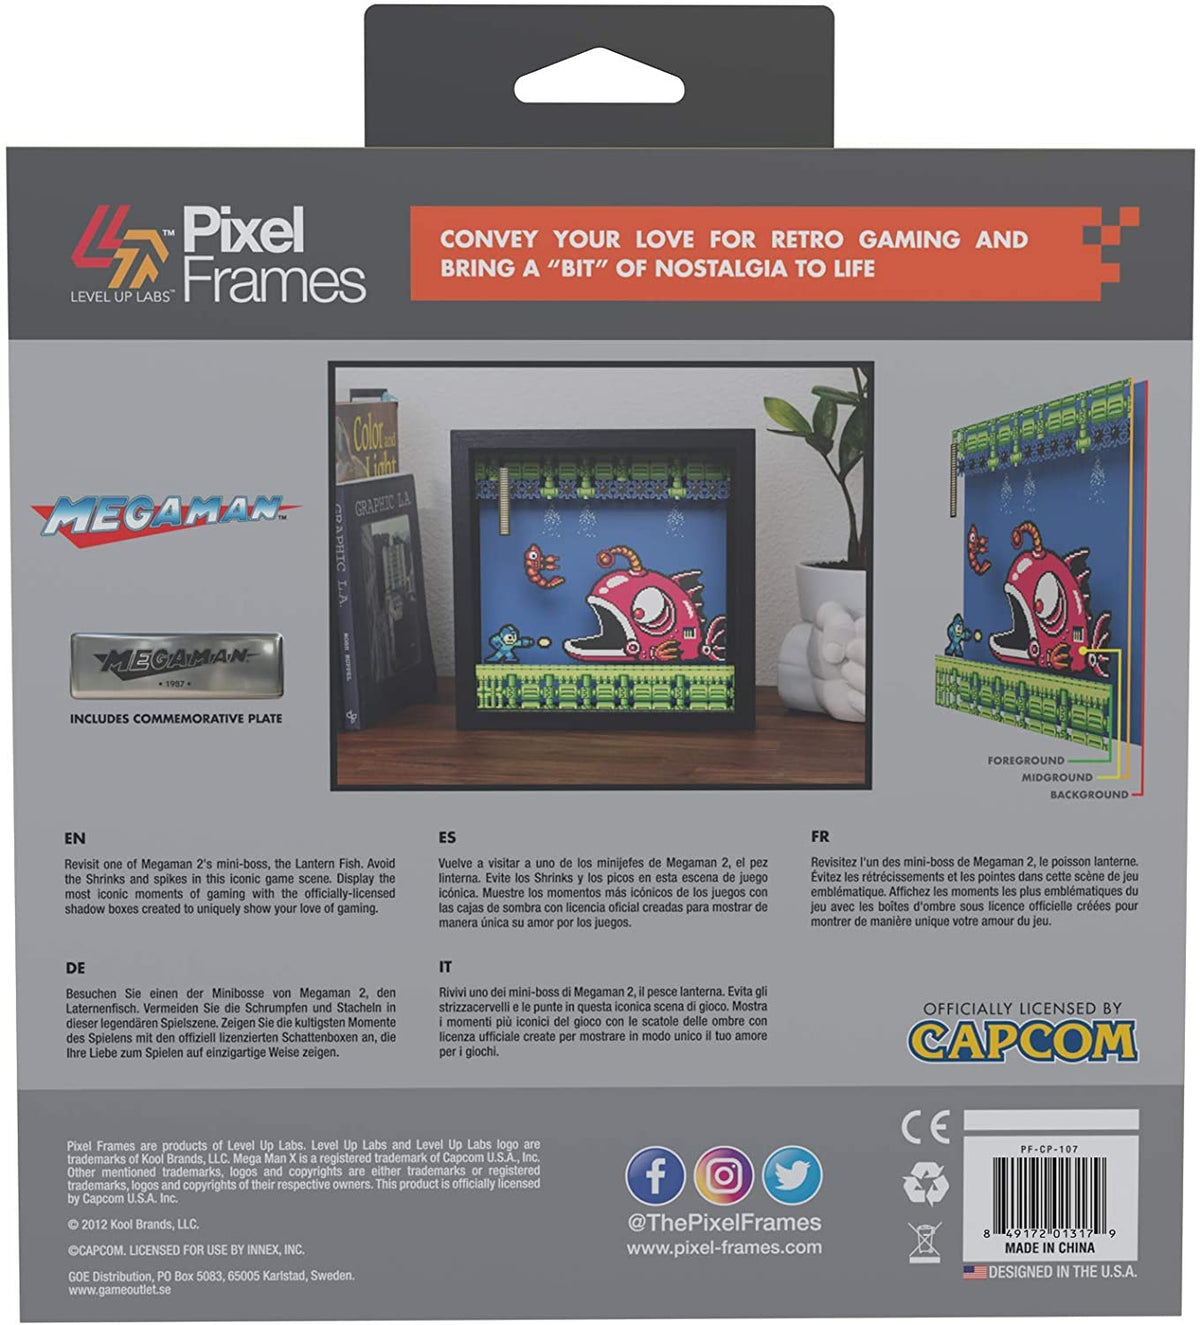 Pixel Frames - Megaman 2 Lantern Fish Gamesellers.nl